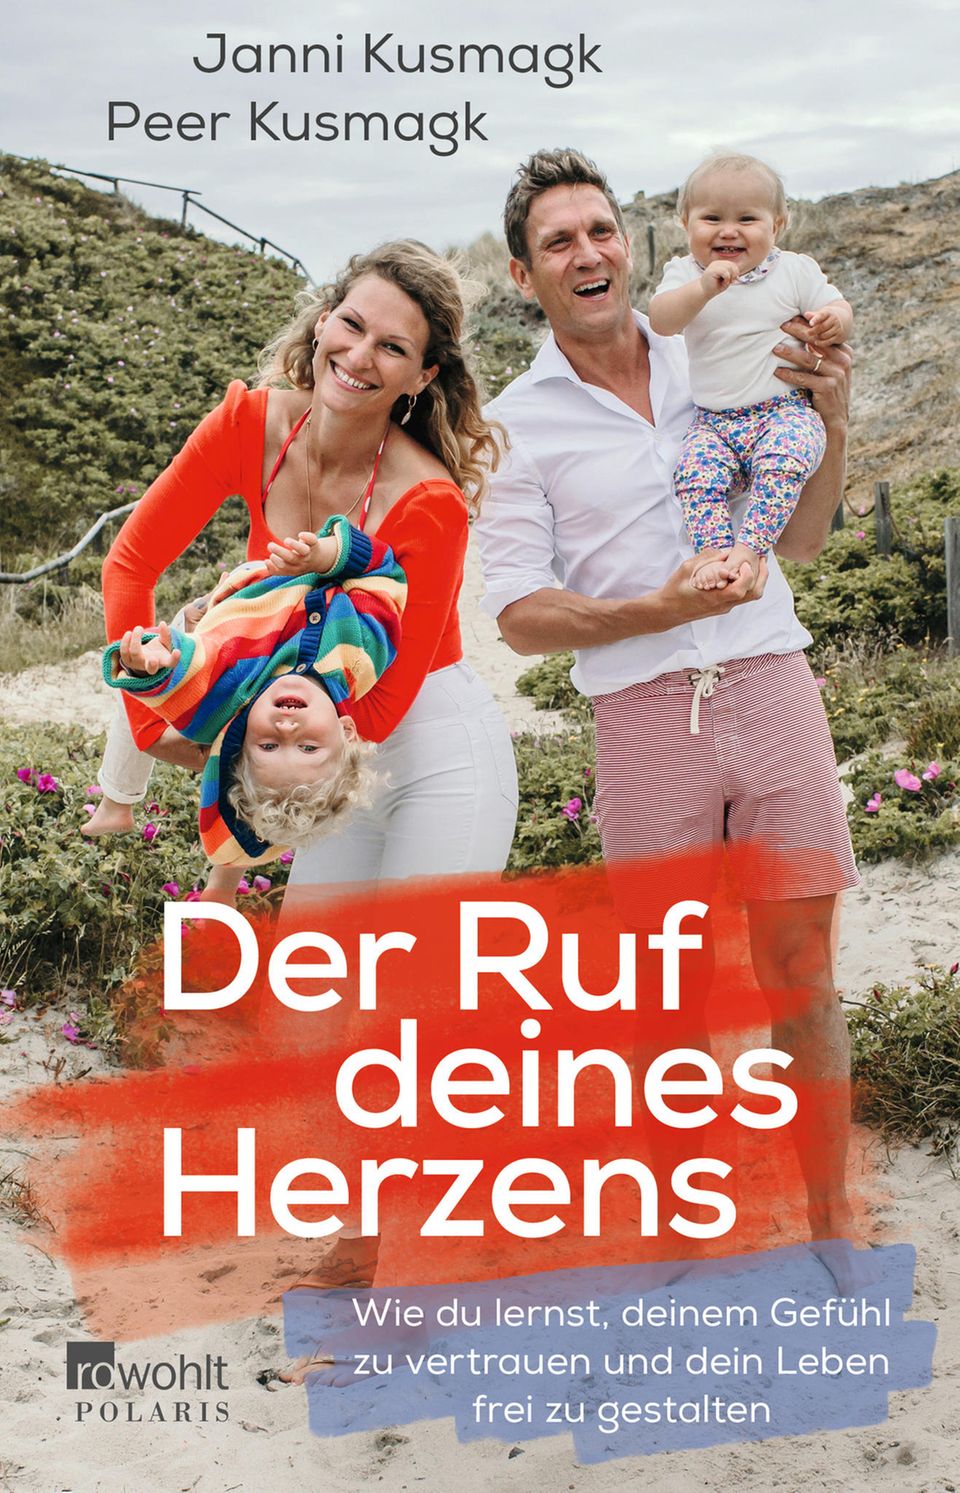 Janni und Peer Kusmagks erstes Buch "Der Ruf deines Herzens" ist am 22. März 2022 im Rowohlt Verlag erschienen.